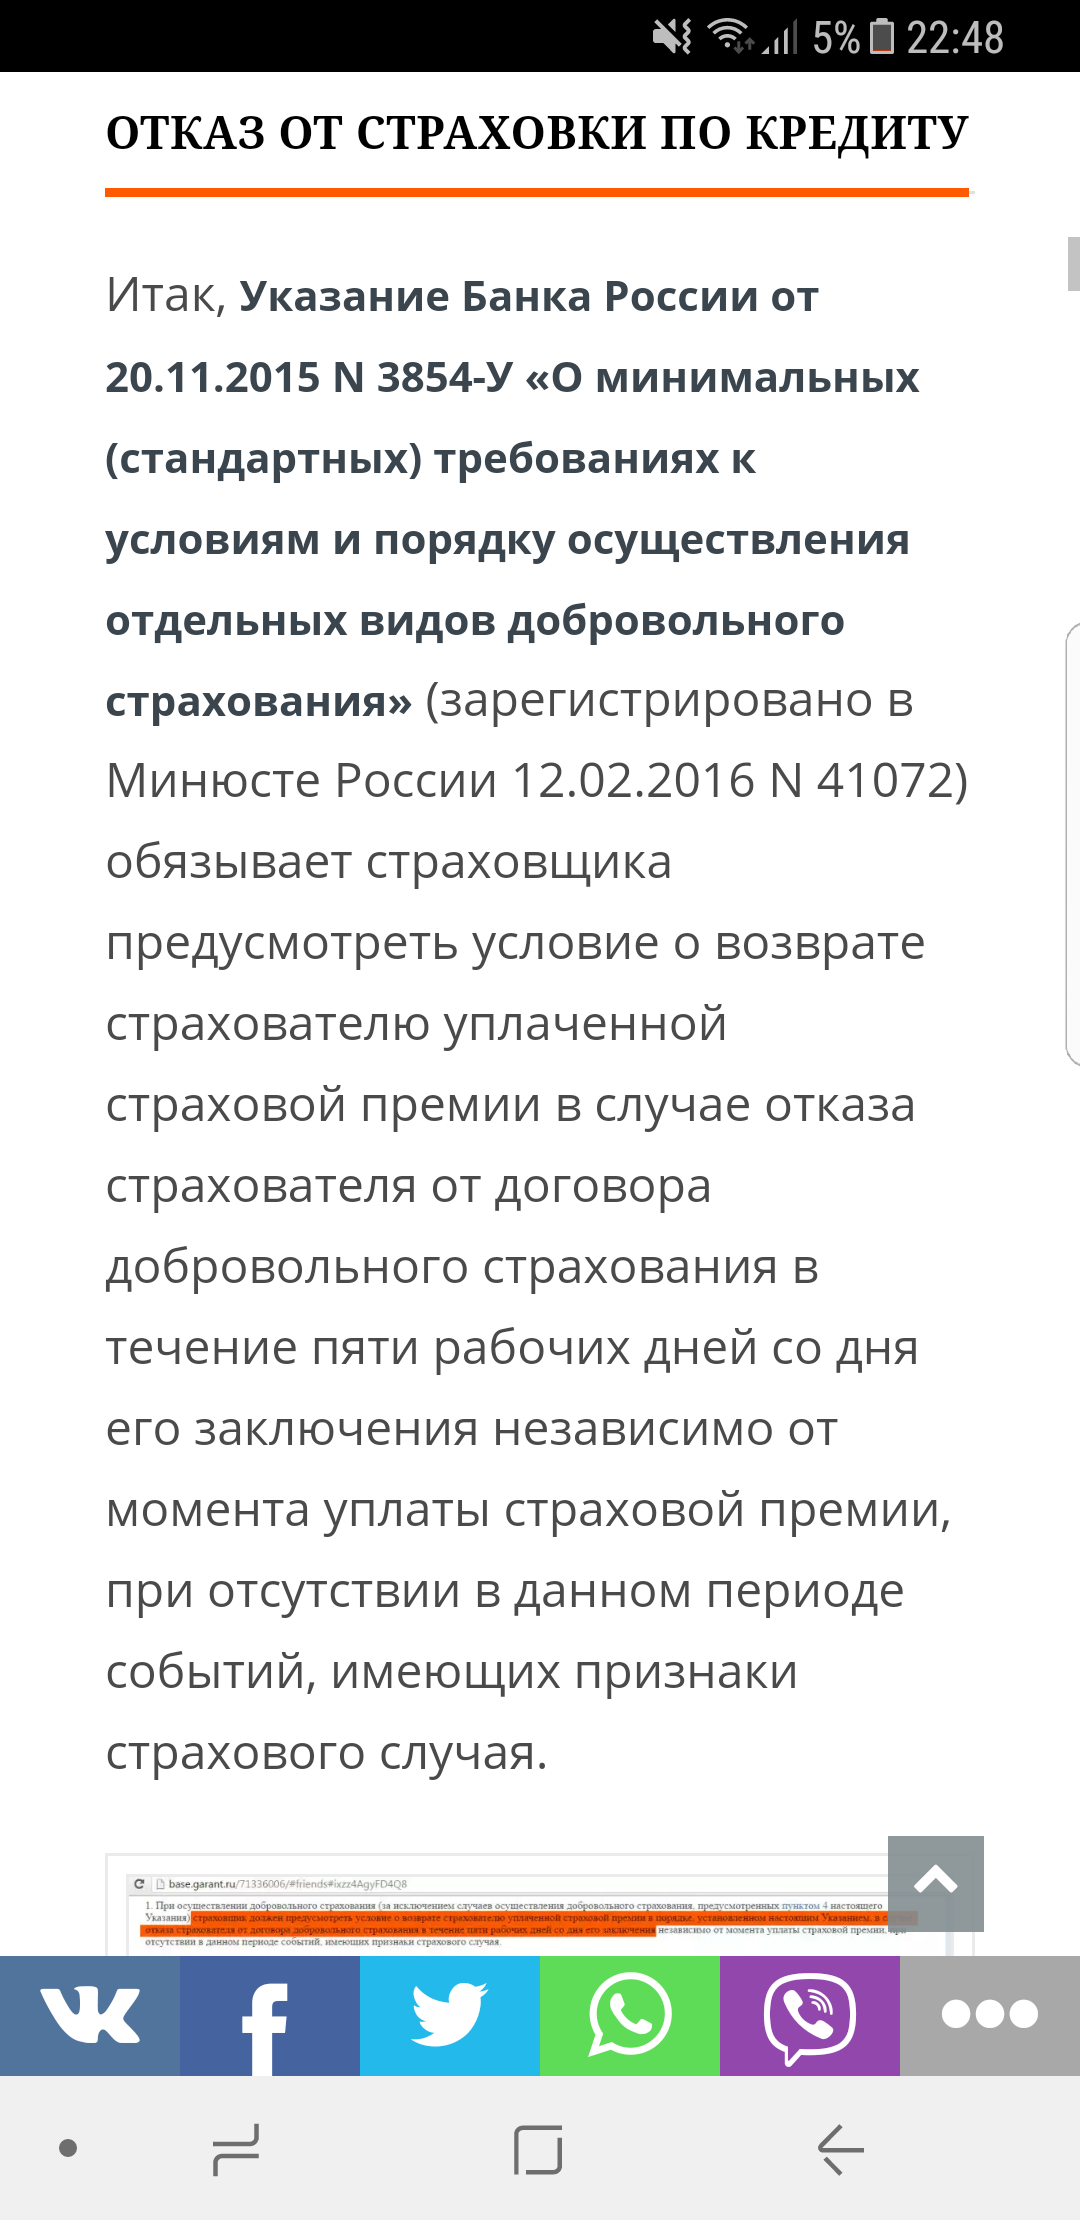 Саяногорск Инфо - screenshot_20170622-224806.png, Скачано: 475